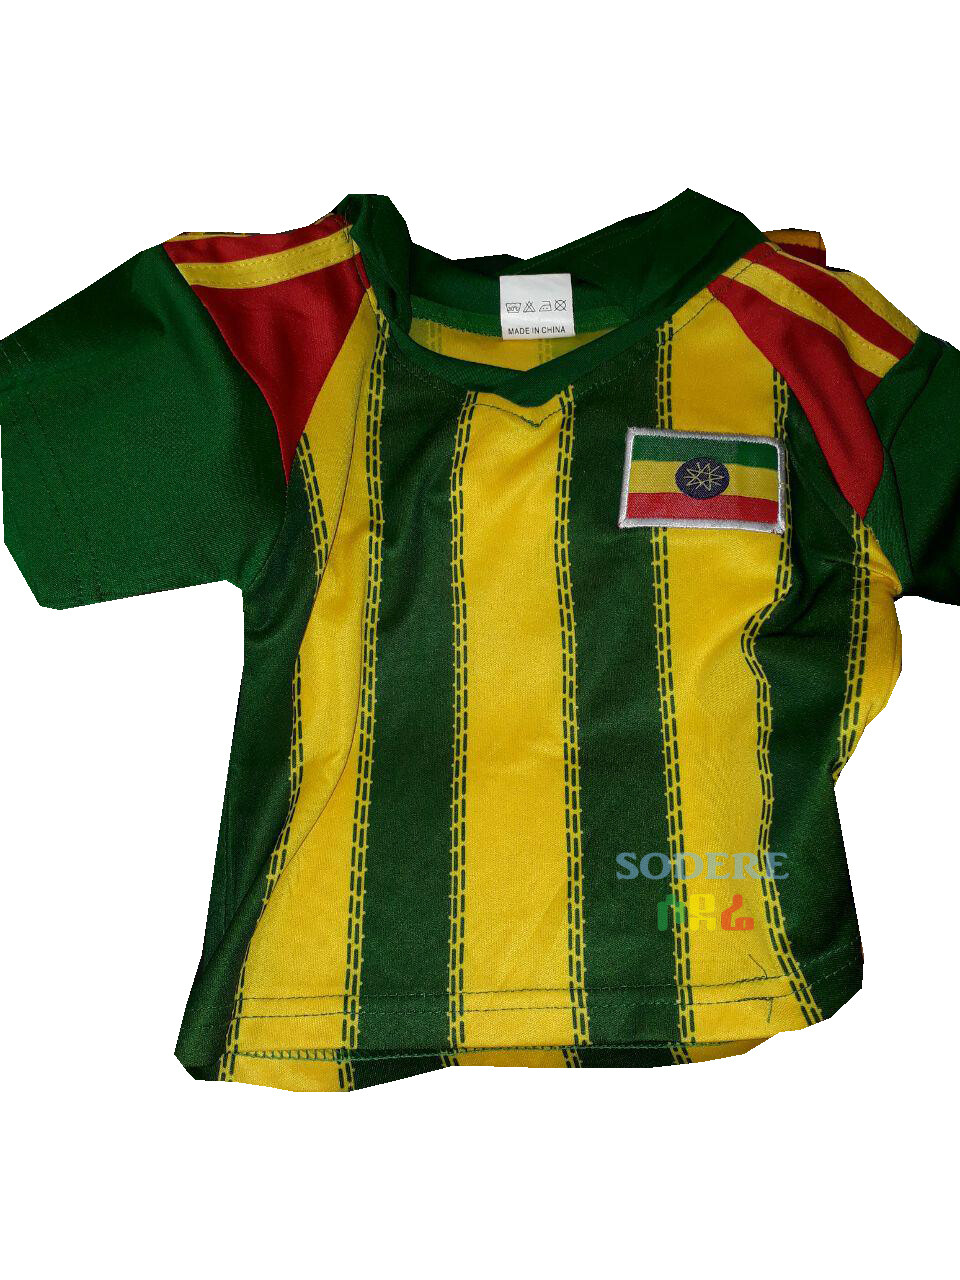 የኢትዮጵያ ማልያ ለልጆች እጅጌ ጉርድ ቲሸርት Ethiopian National Team T-shirt for Kids